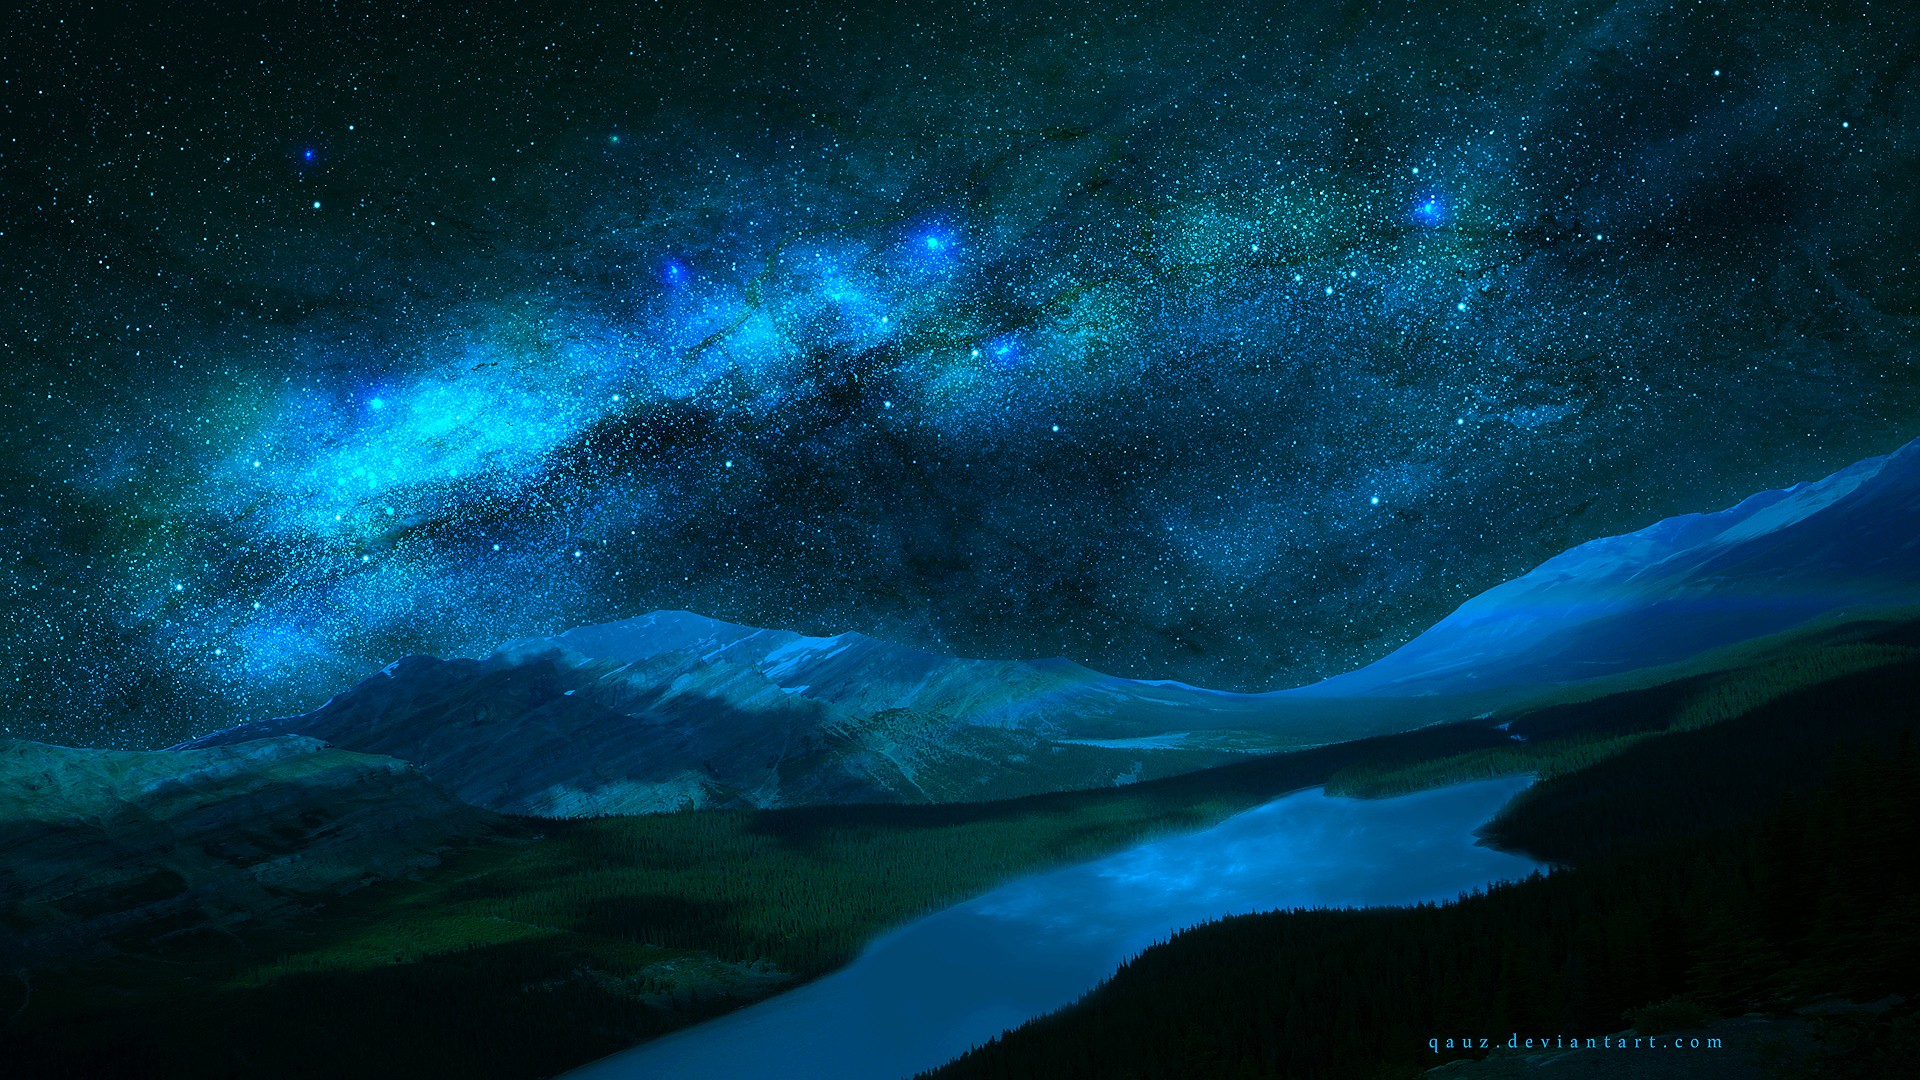 General 1920x1080 nature landscape Milky Way DeviantArt lake stars Peyto Lake watermarked digital art low light